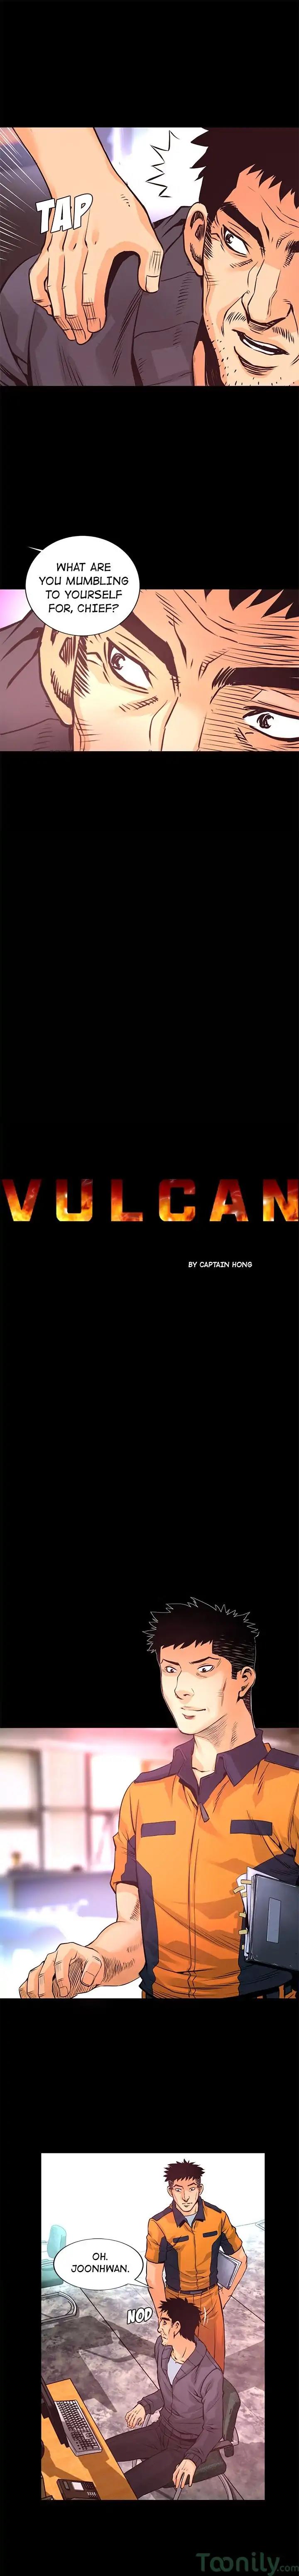 Vulcan Episode 9